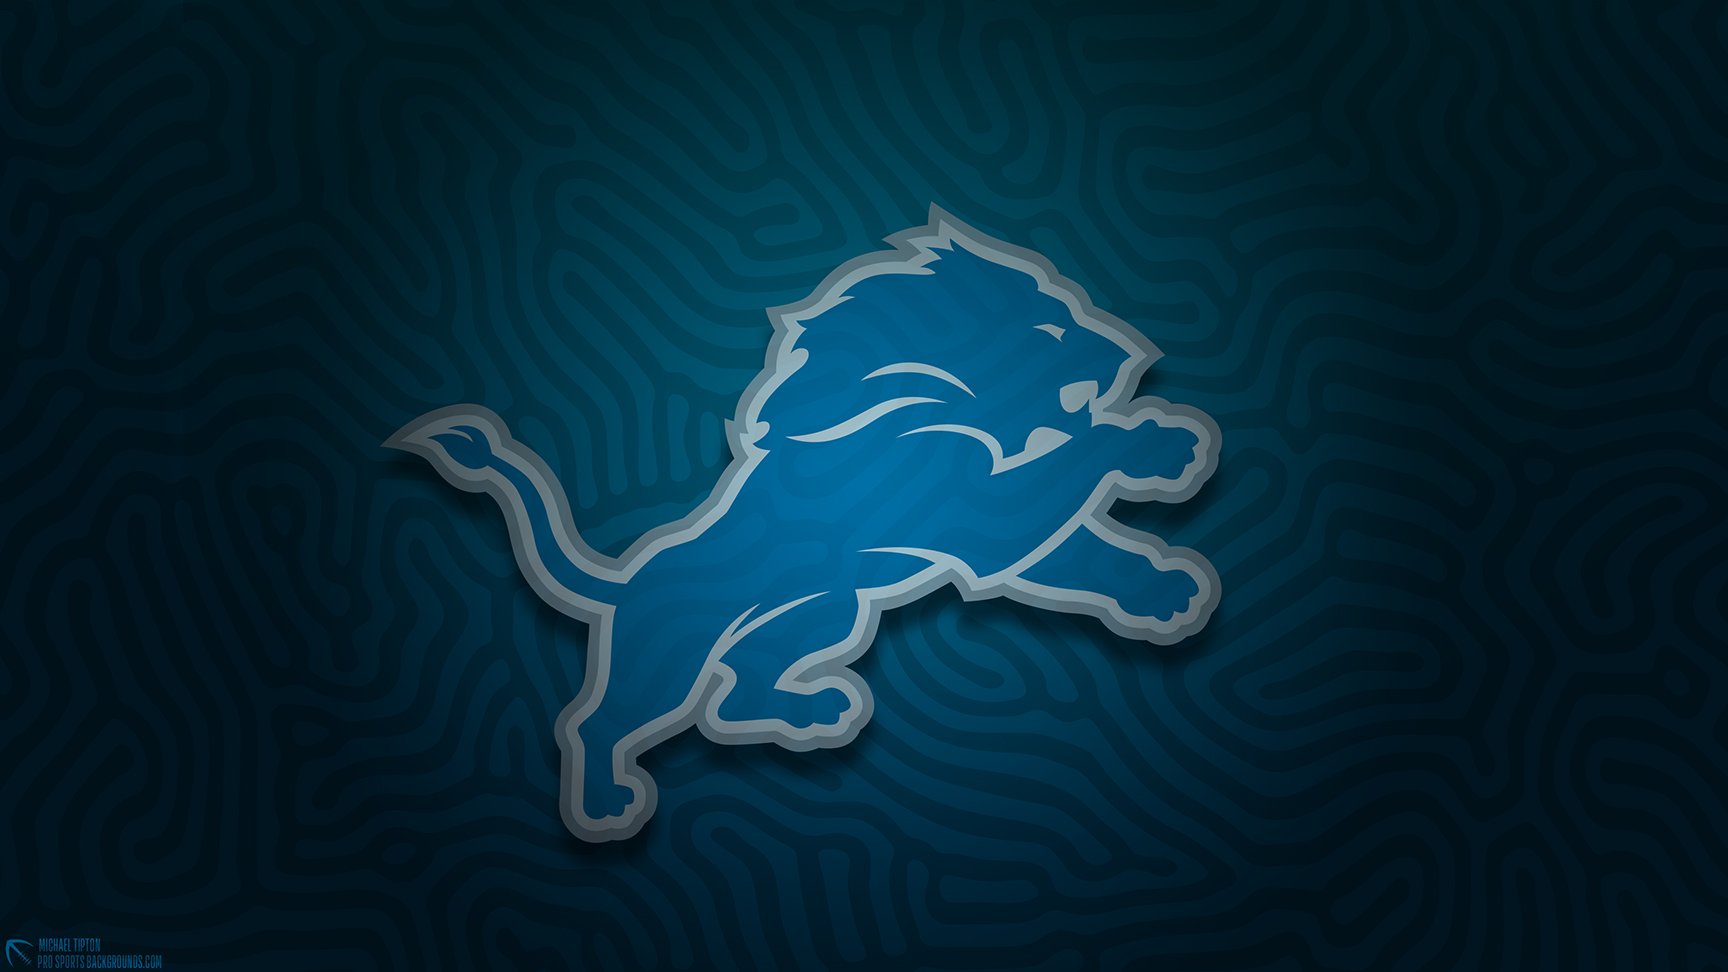 Detroit Lions Motto